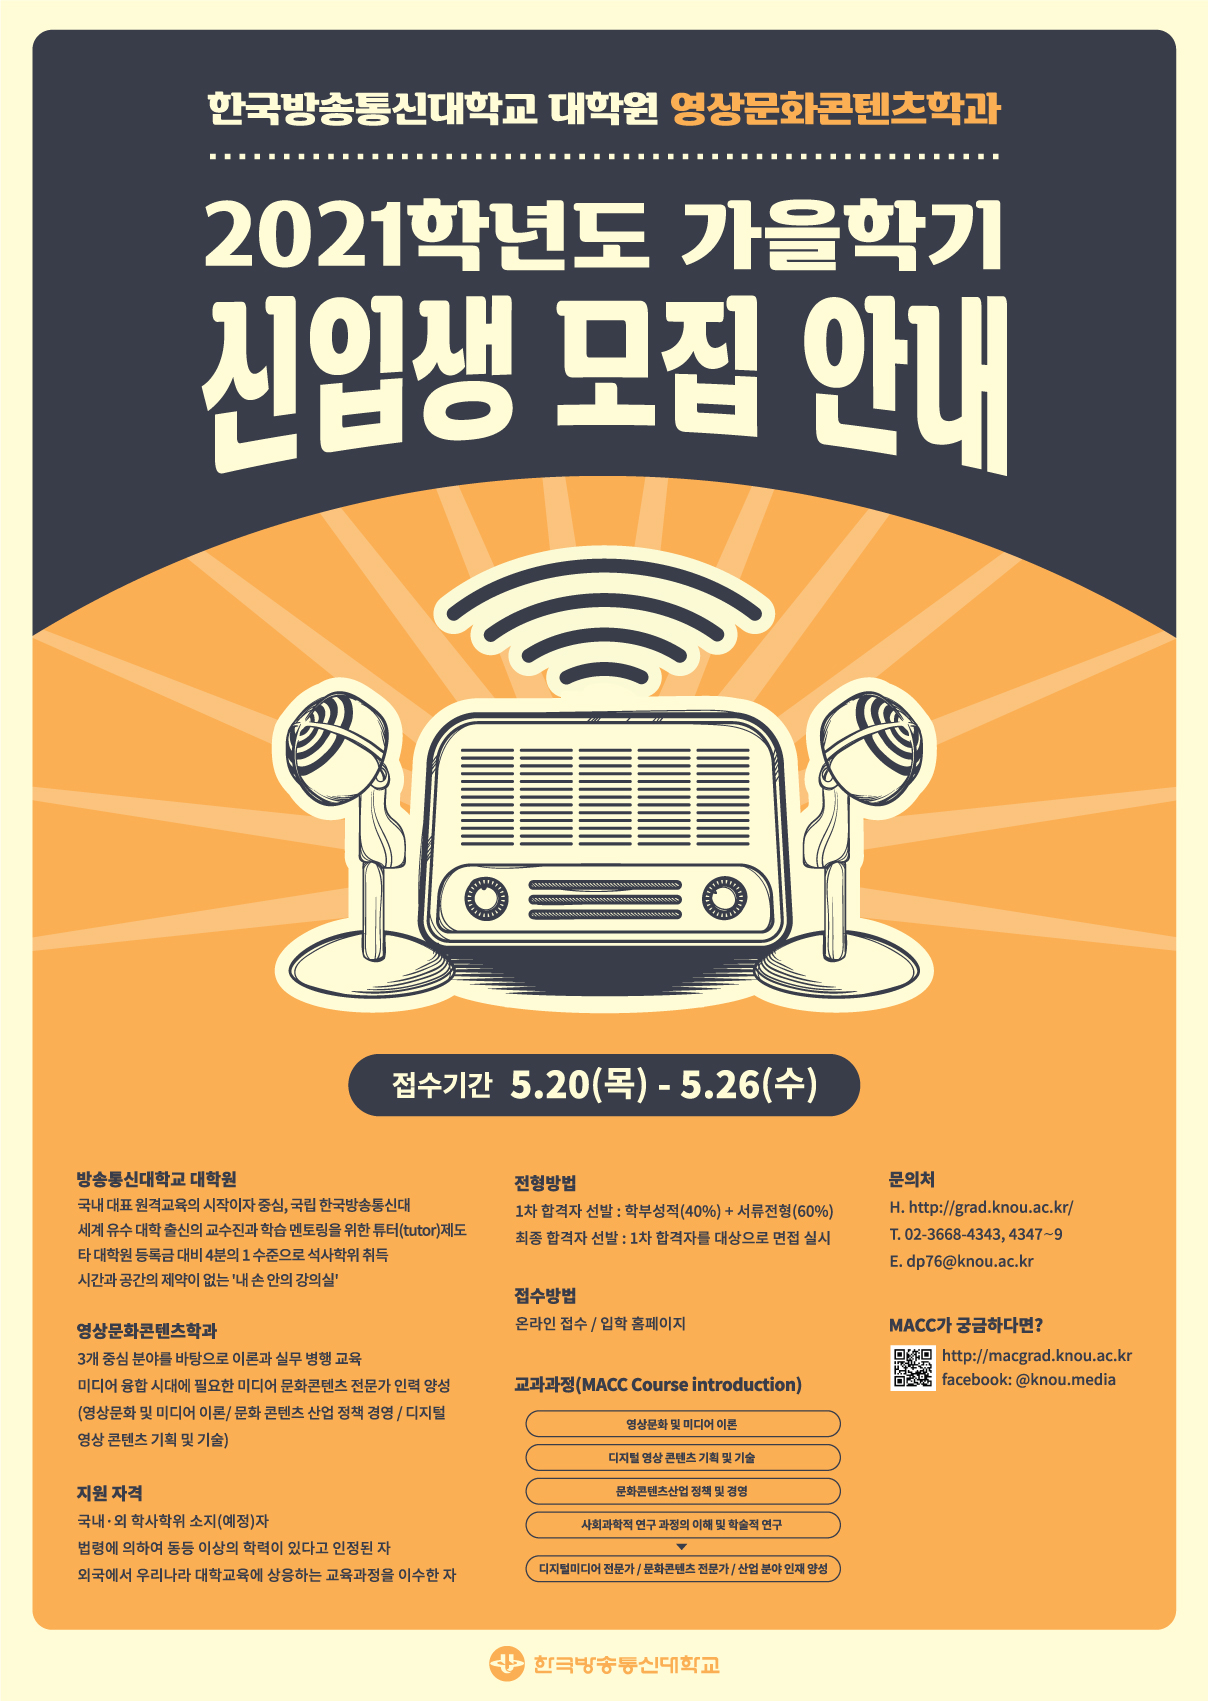 한국방송통신대학교 대학원 영상문화콘텐츠학과 2021학년도 가을학기 신입생 모집 안내 포스터